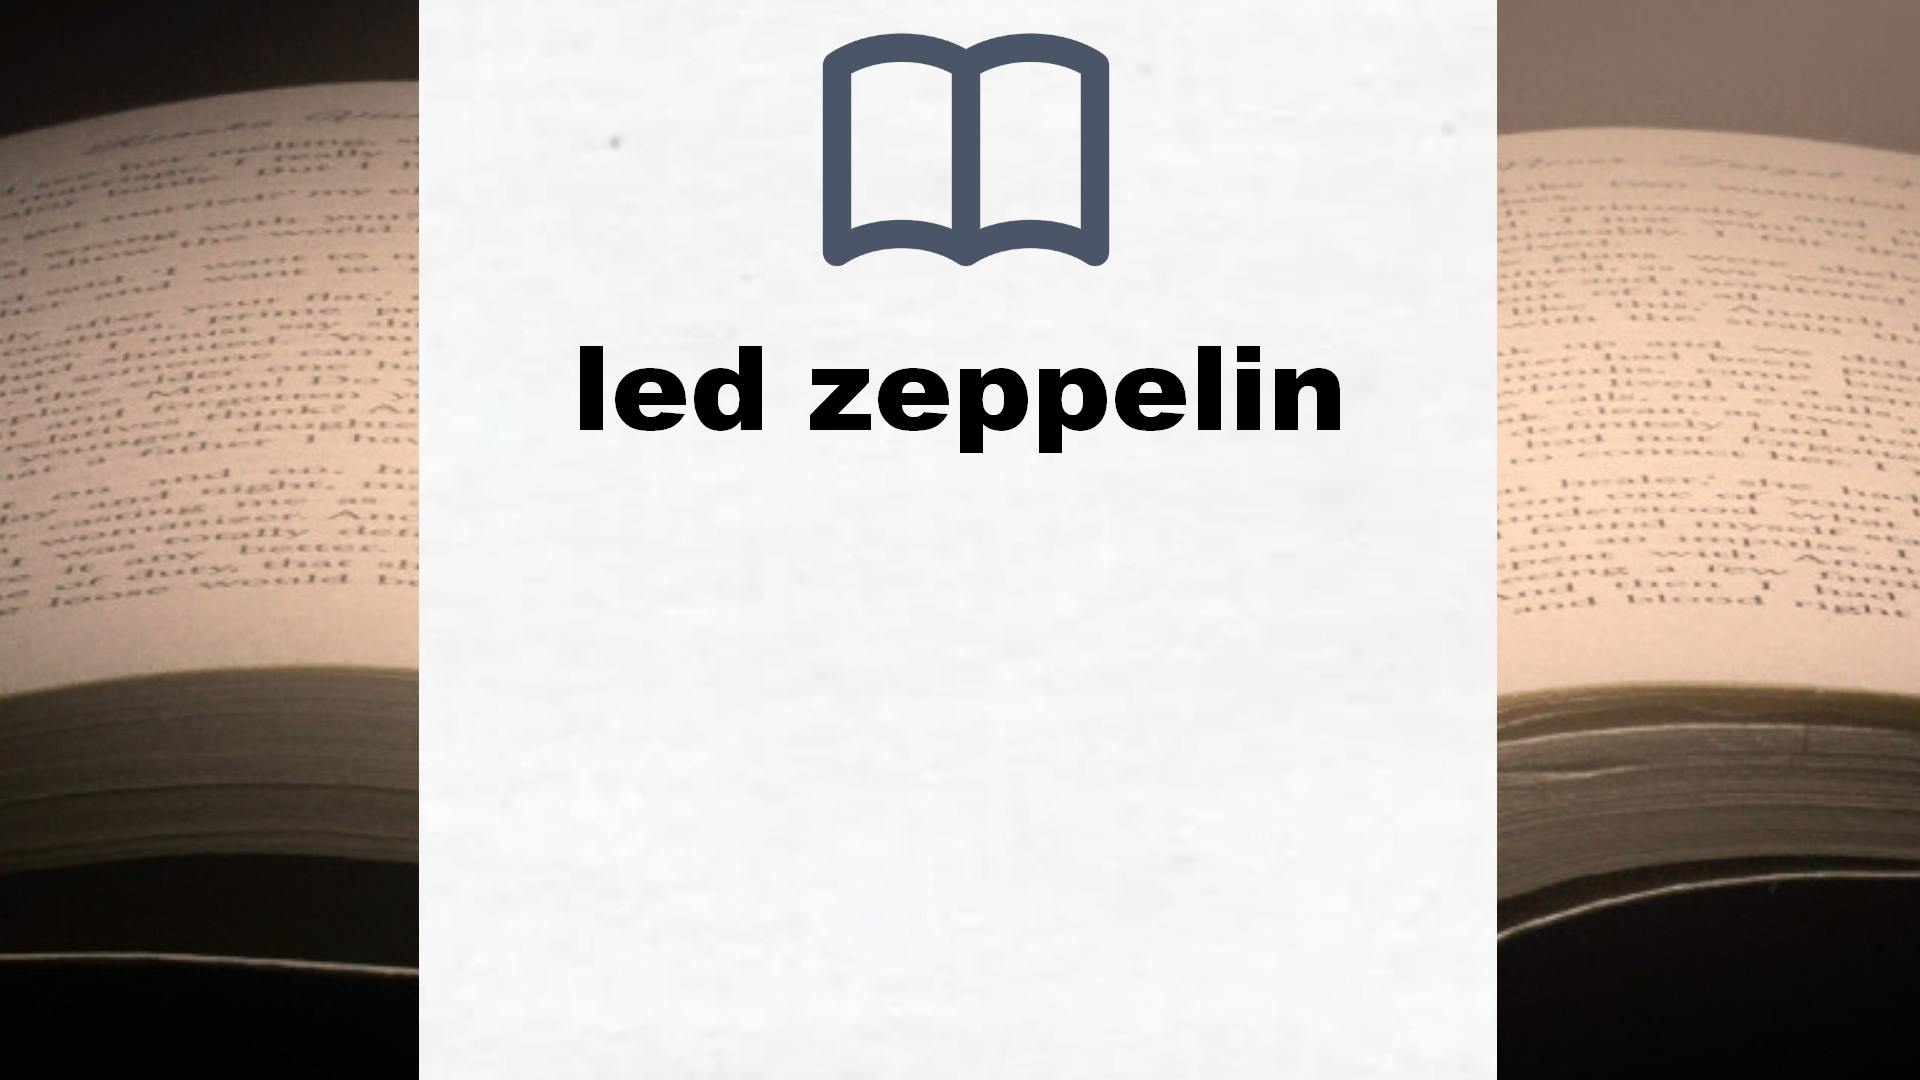 Libros sobre led zeppelin